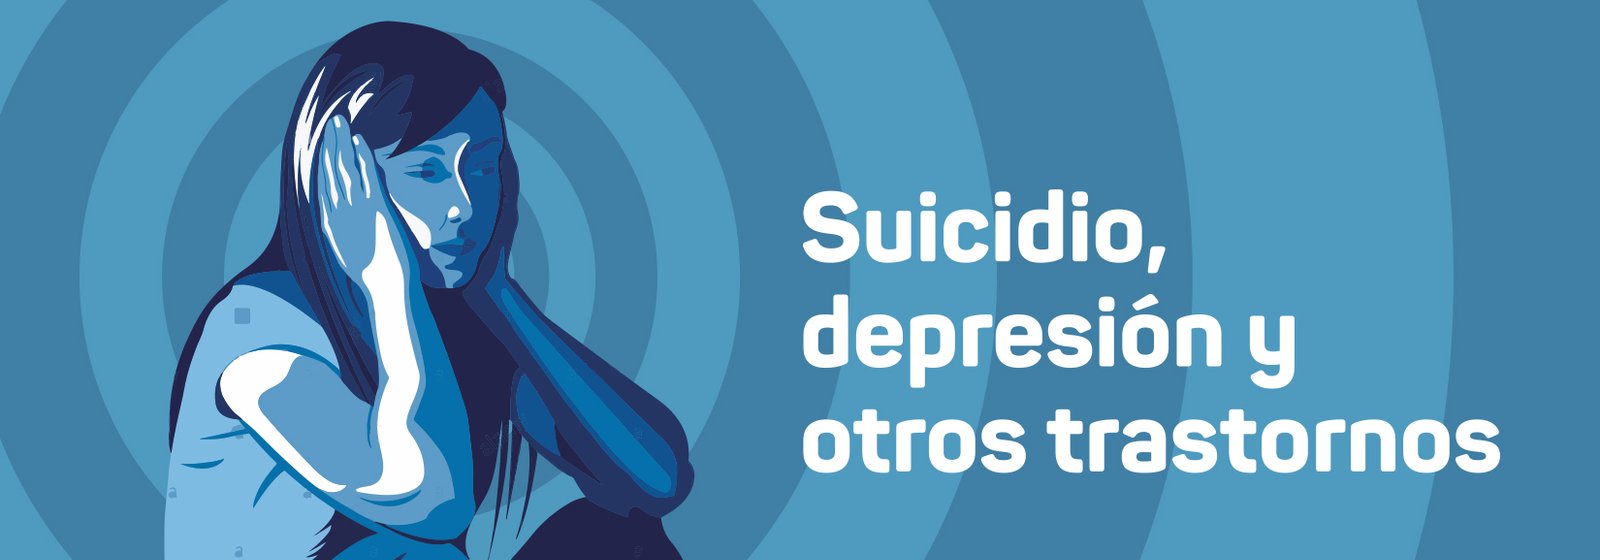 Suicidio, depresión y otros trastornos